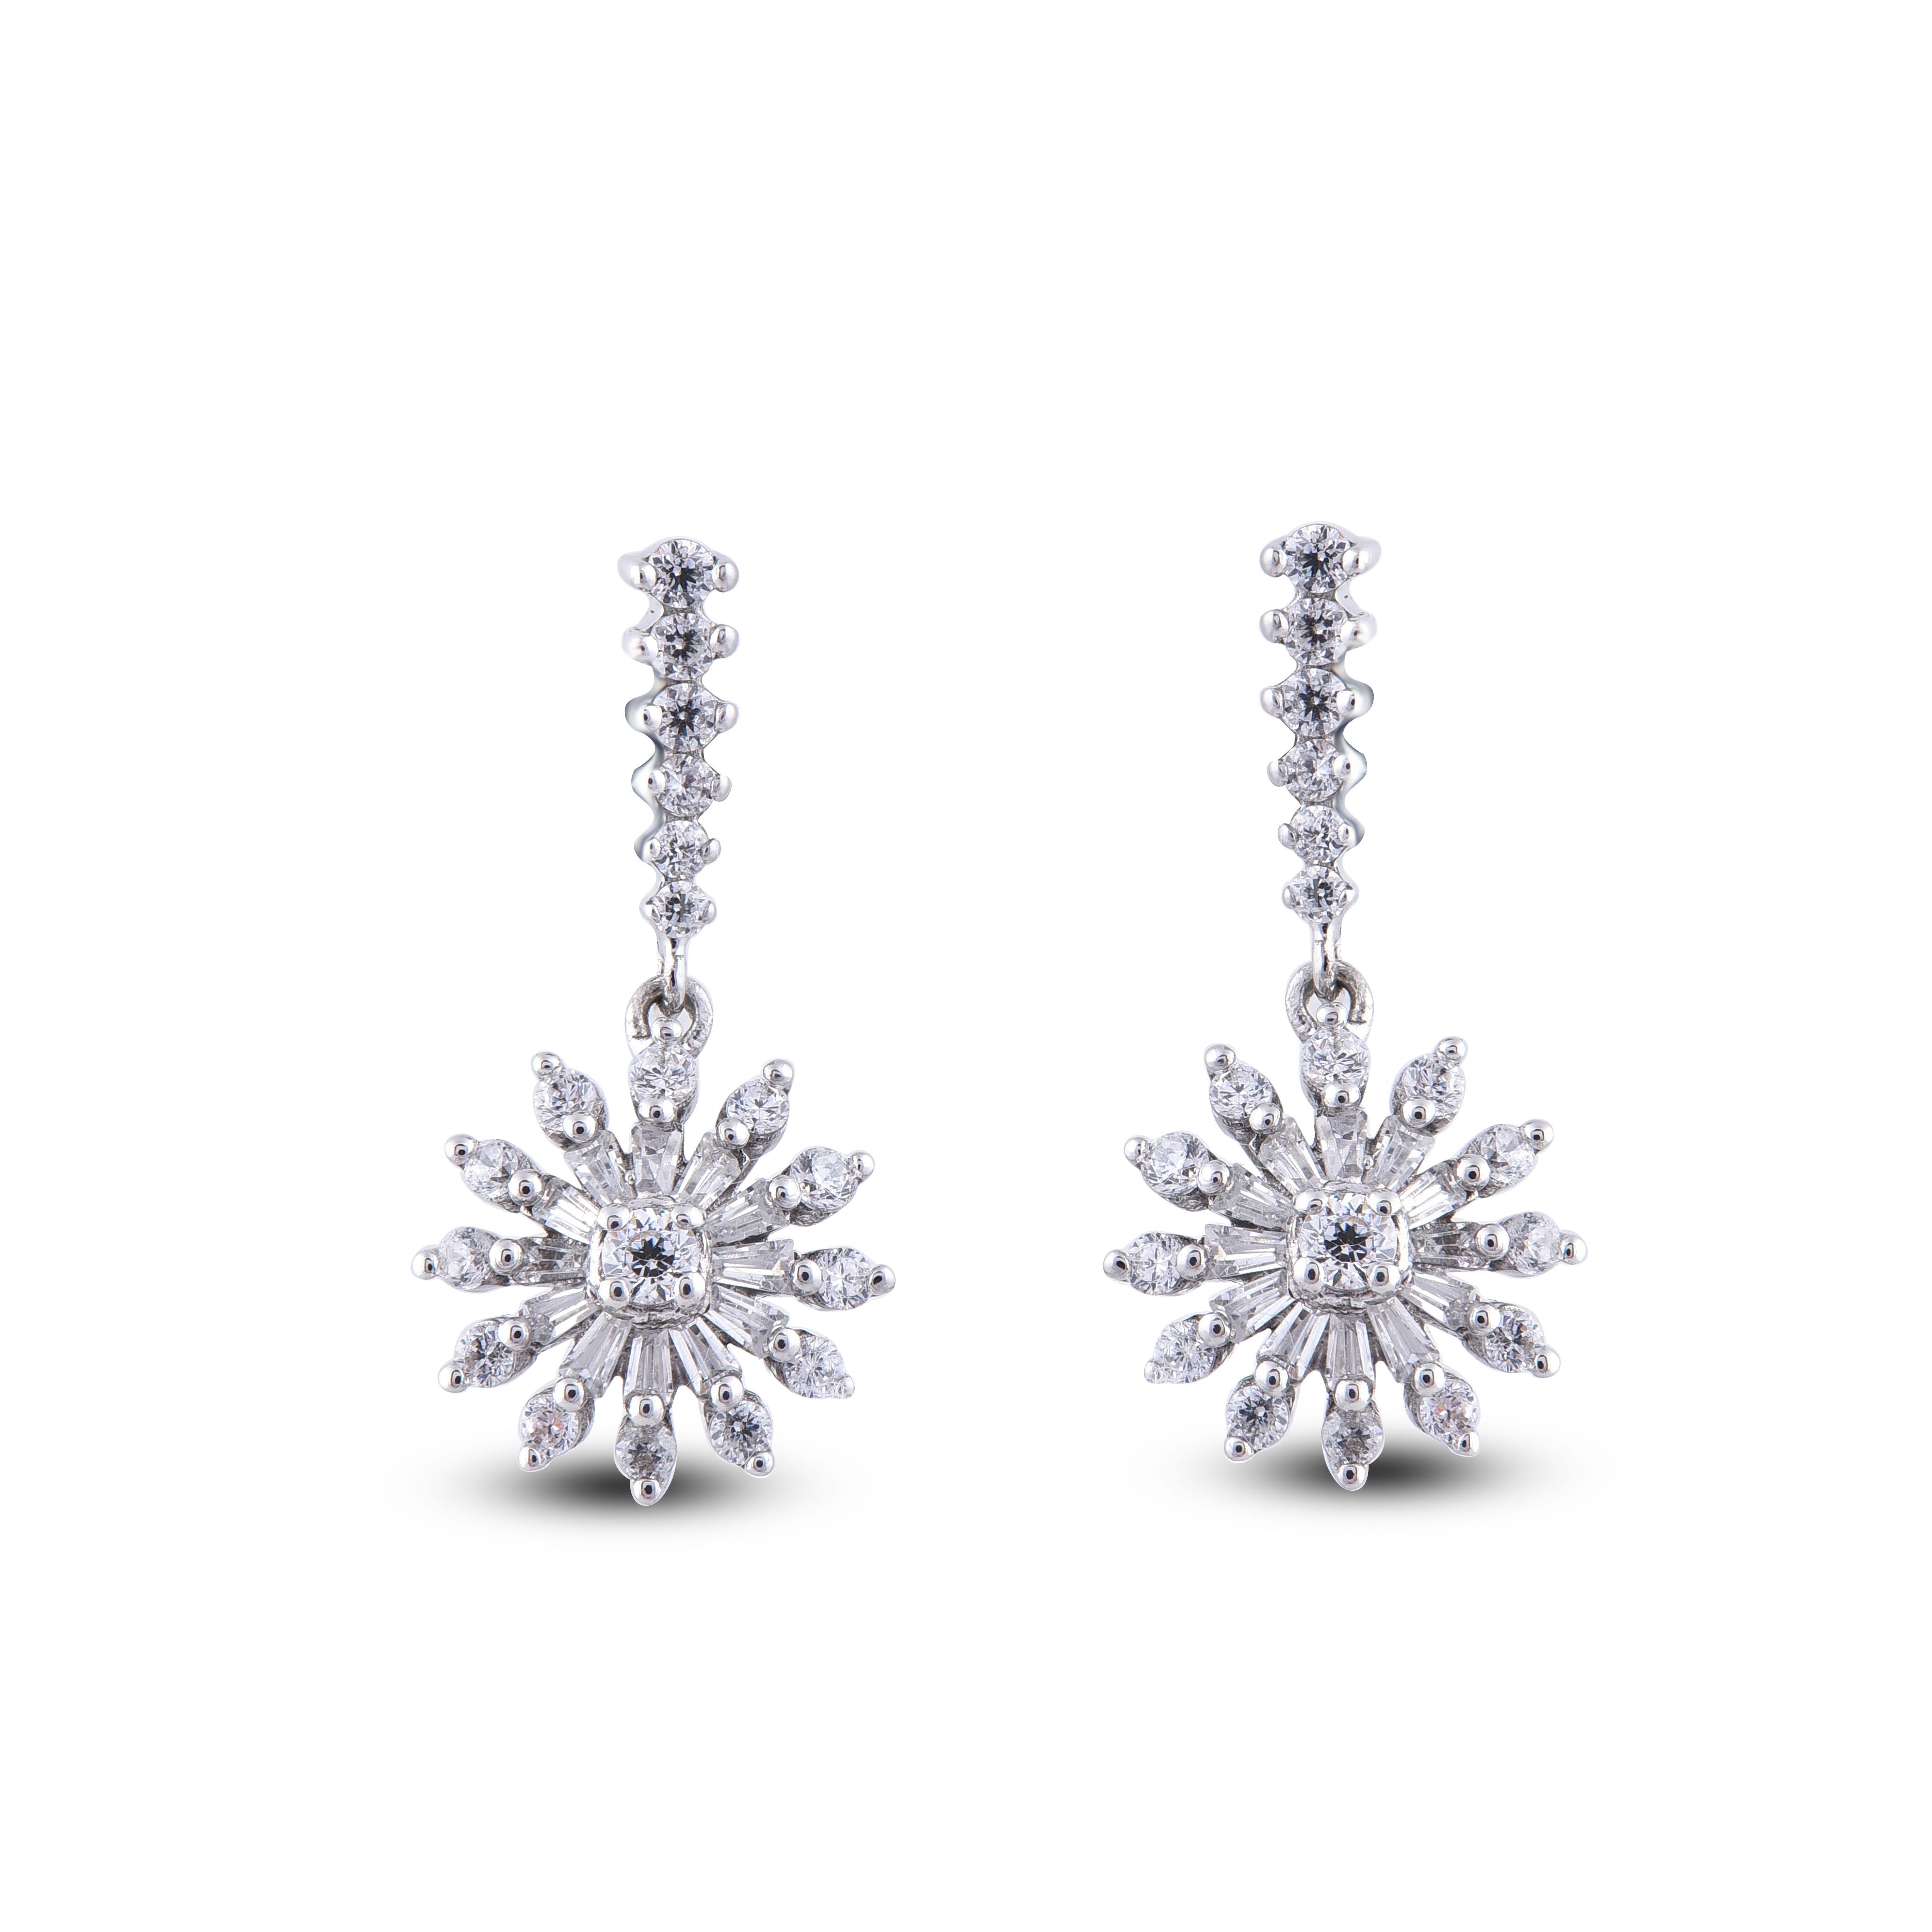 Diese exquisiten Design-Diamant-Blumen-Ohrringe bieten eine Schönheit, die nur ihr selbst gleichkommt. 38 runde und 24 Baguette-Diamanten sind in Zackenfassung gefasst und in 14 Karat Weißgold gestaltet. Diese zeitlosen Ohrstecker lassen sich mit